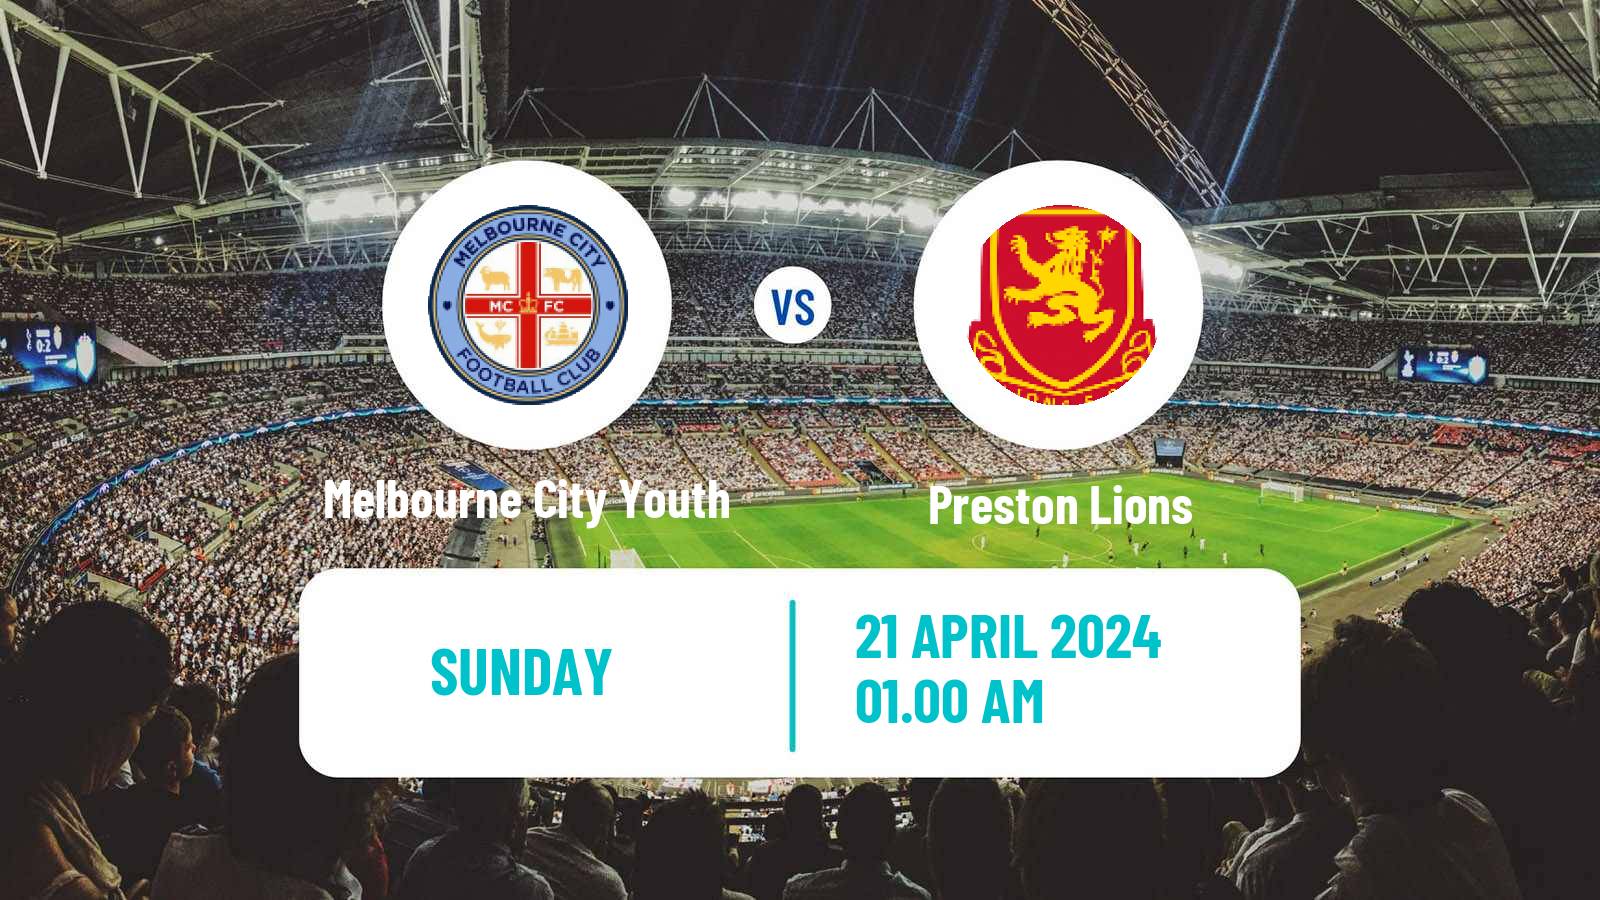 Soccer Australian Victoria Premier League Melbourne City Youth - Preston Lions